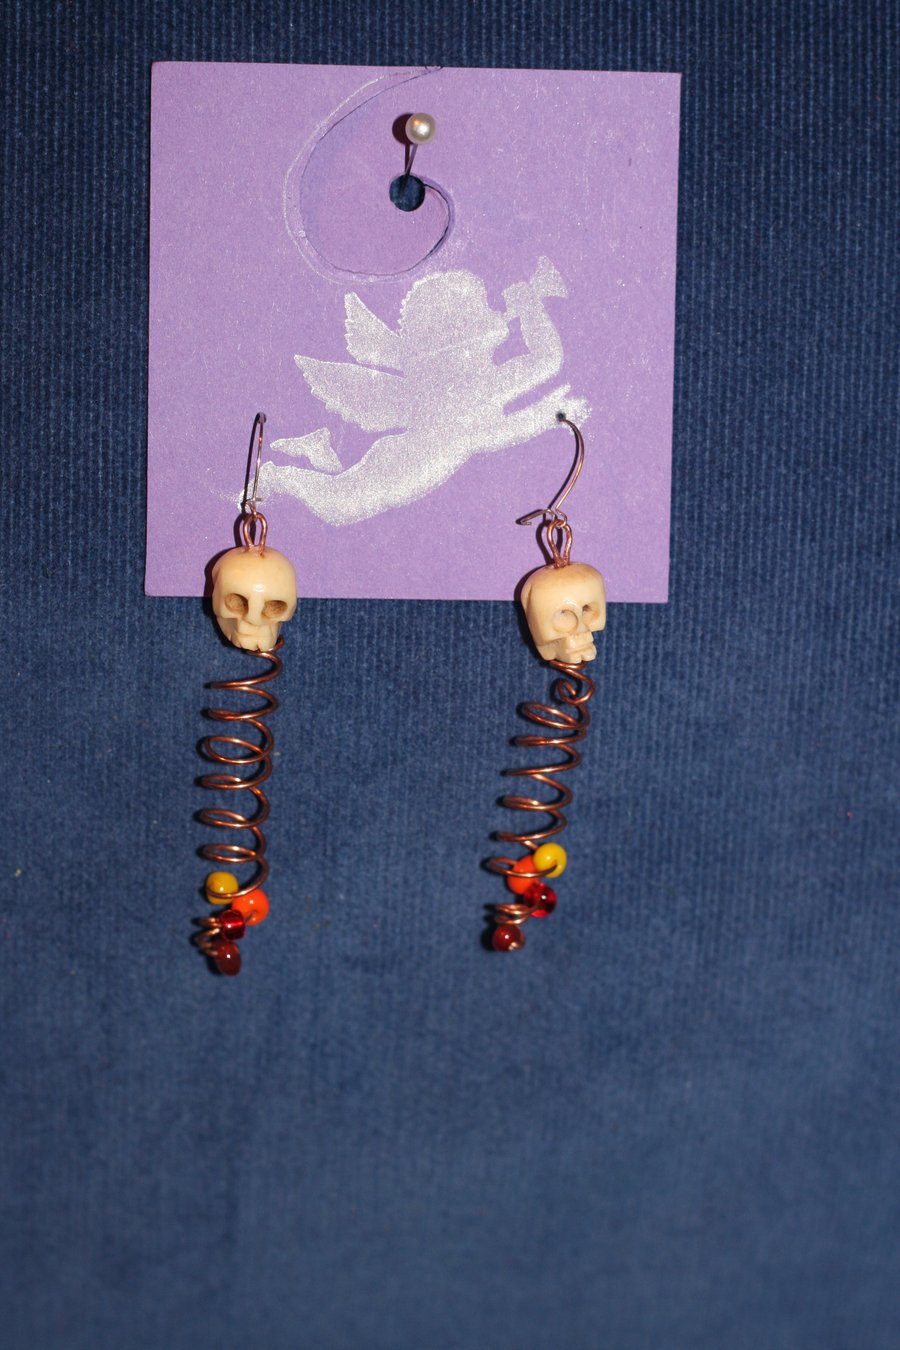 Spiral and skull earrings